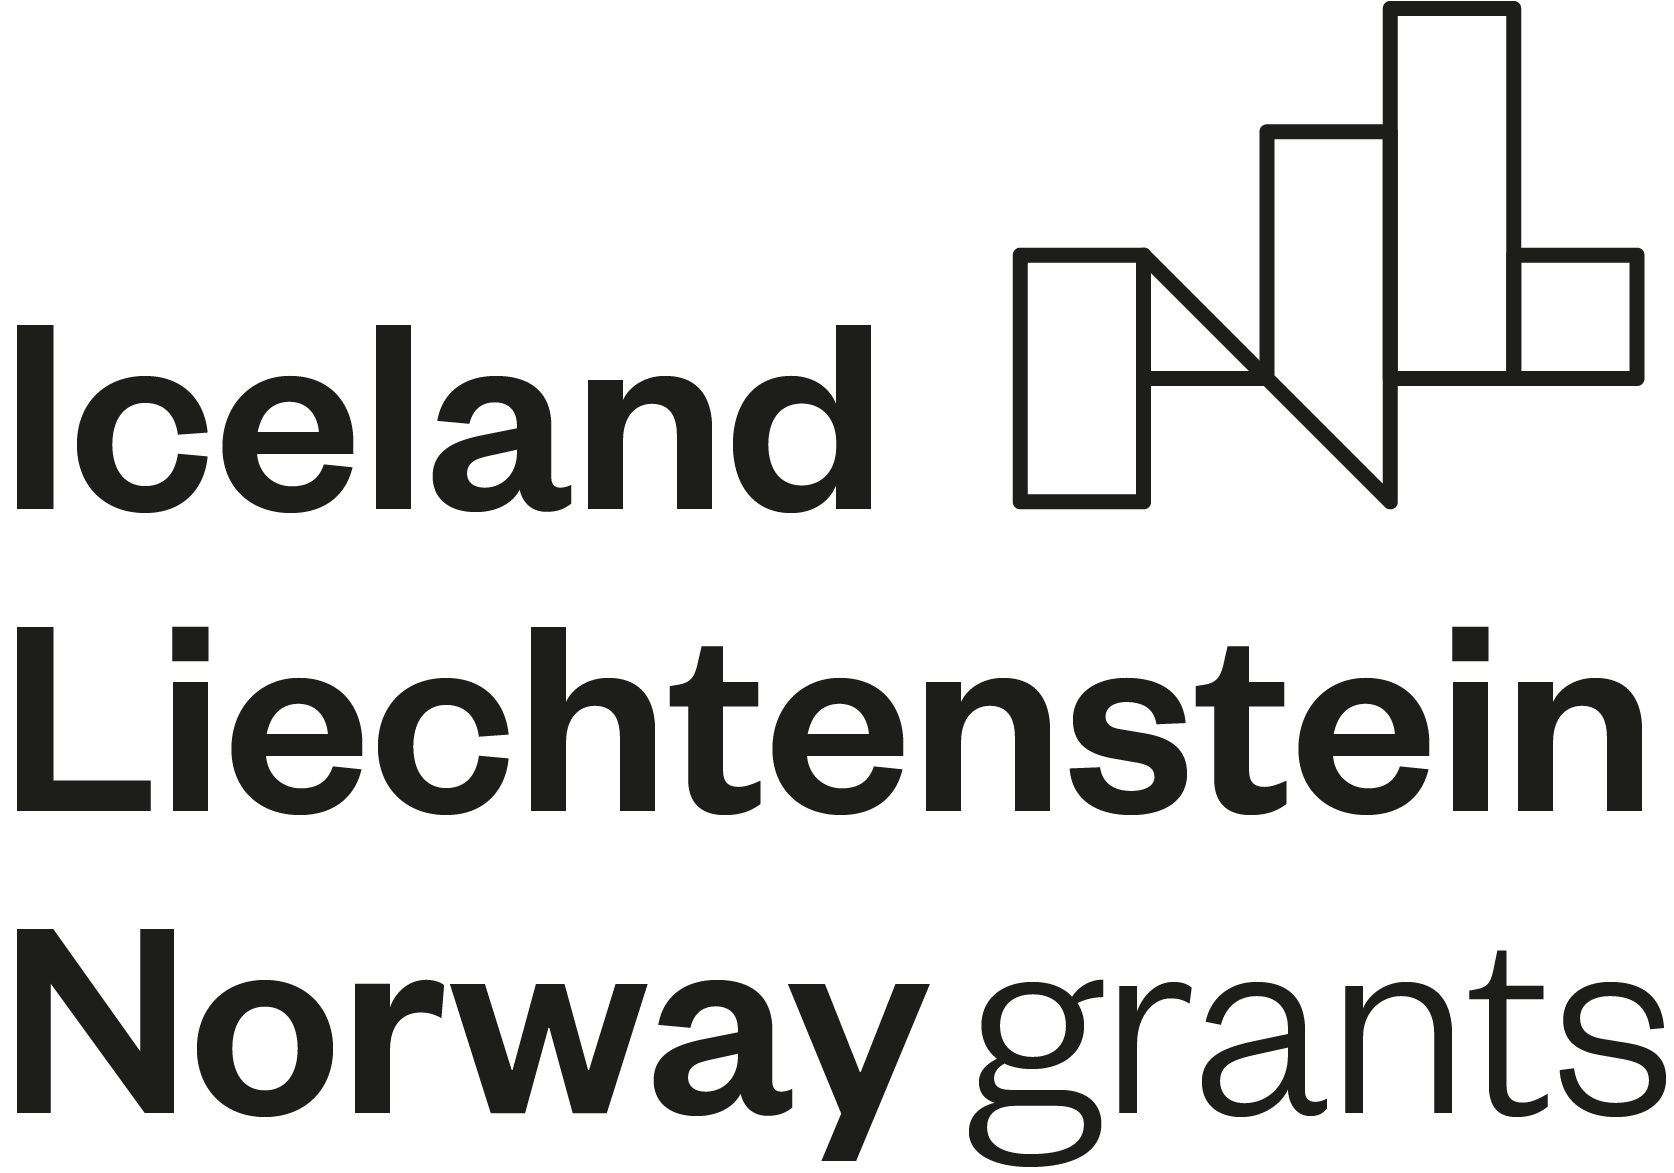 EEA Norway grants